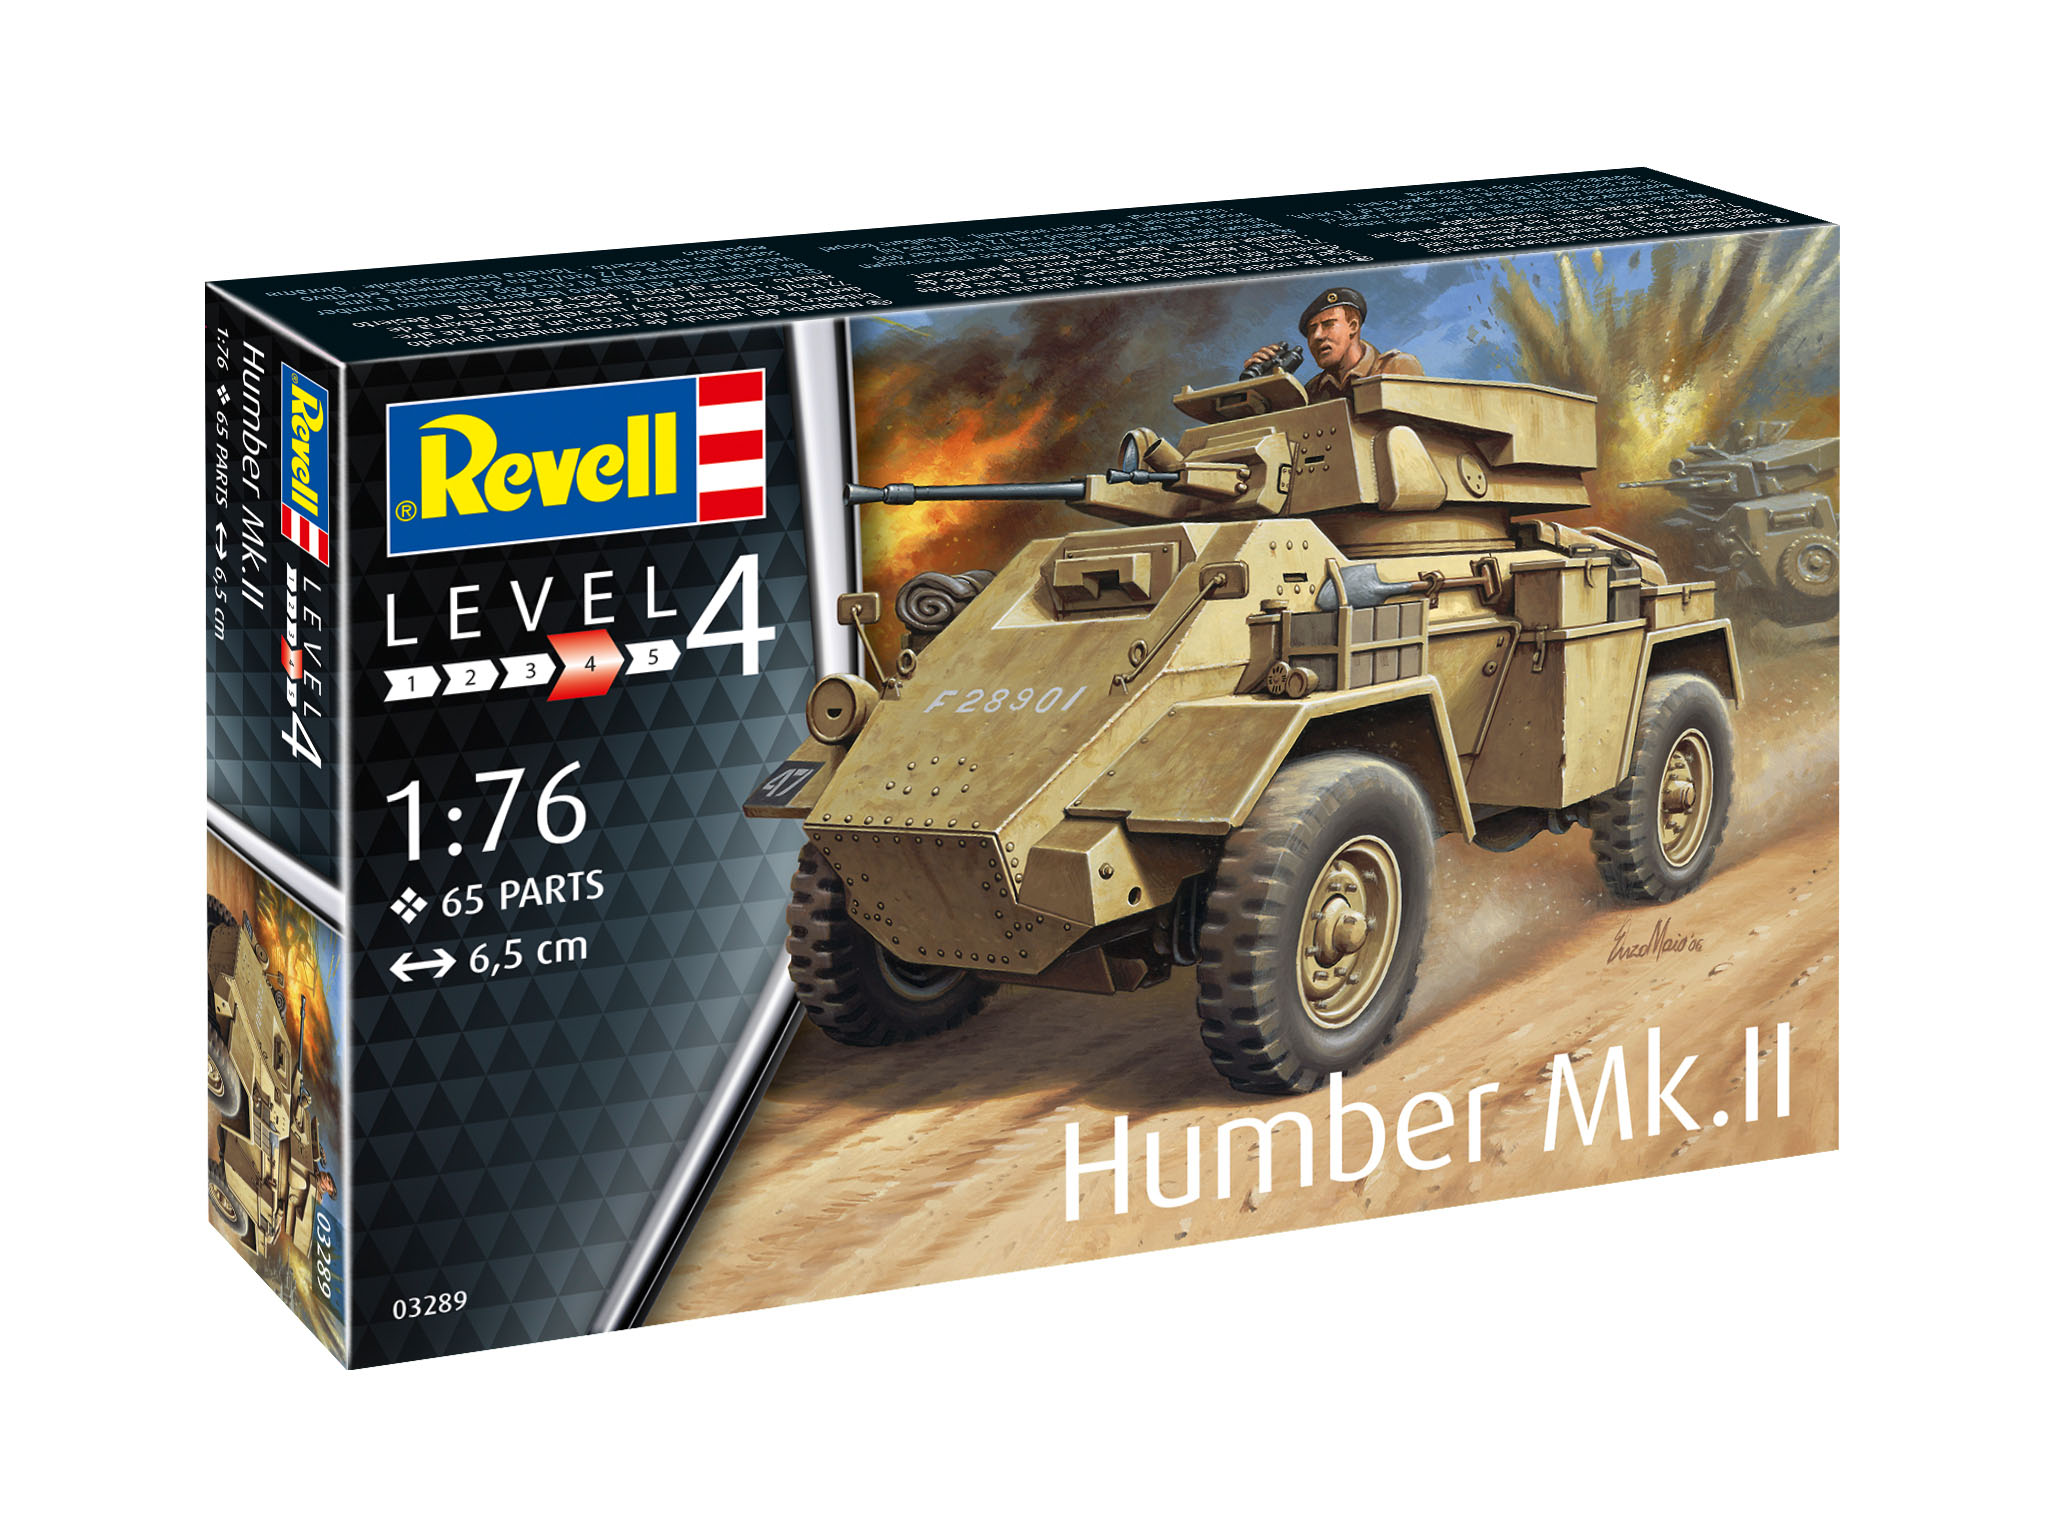 Humber Mk.II - 03289